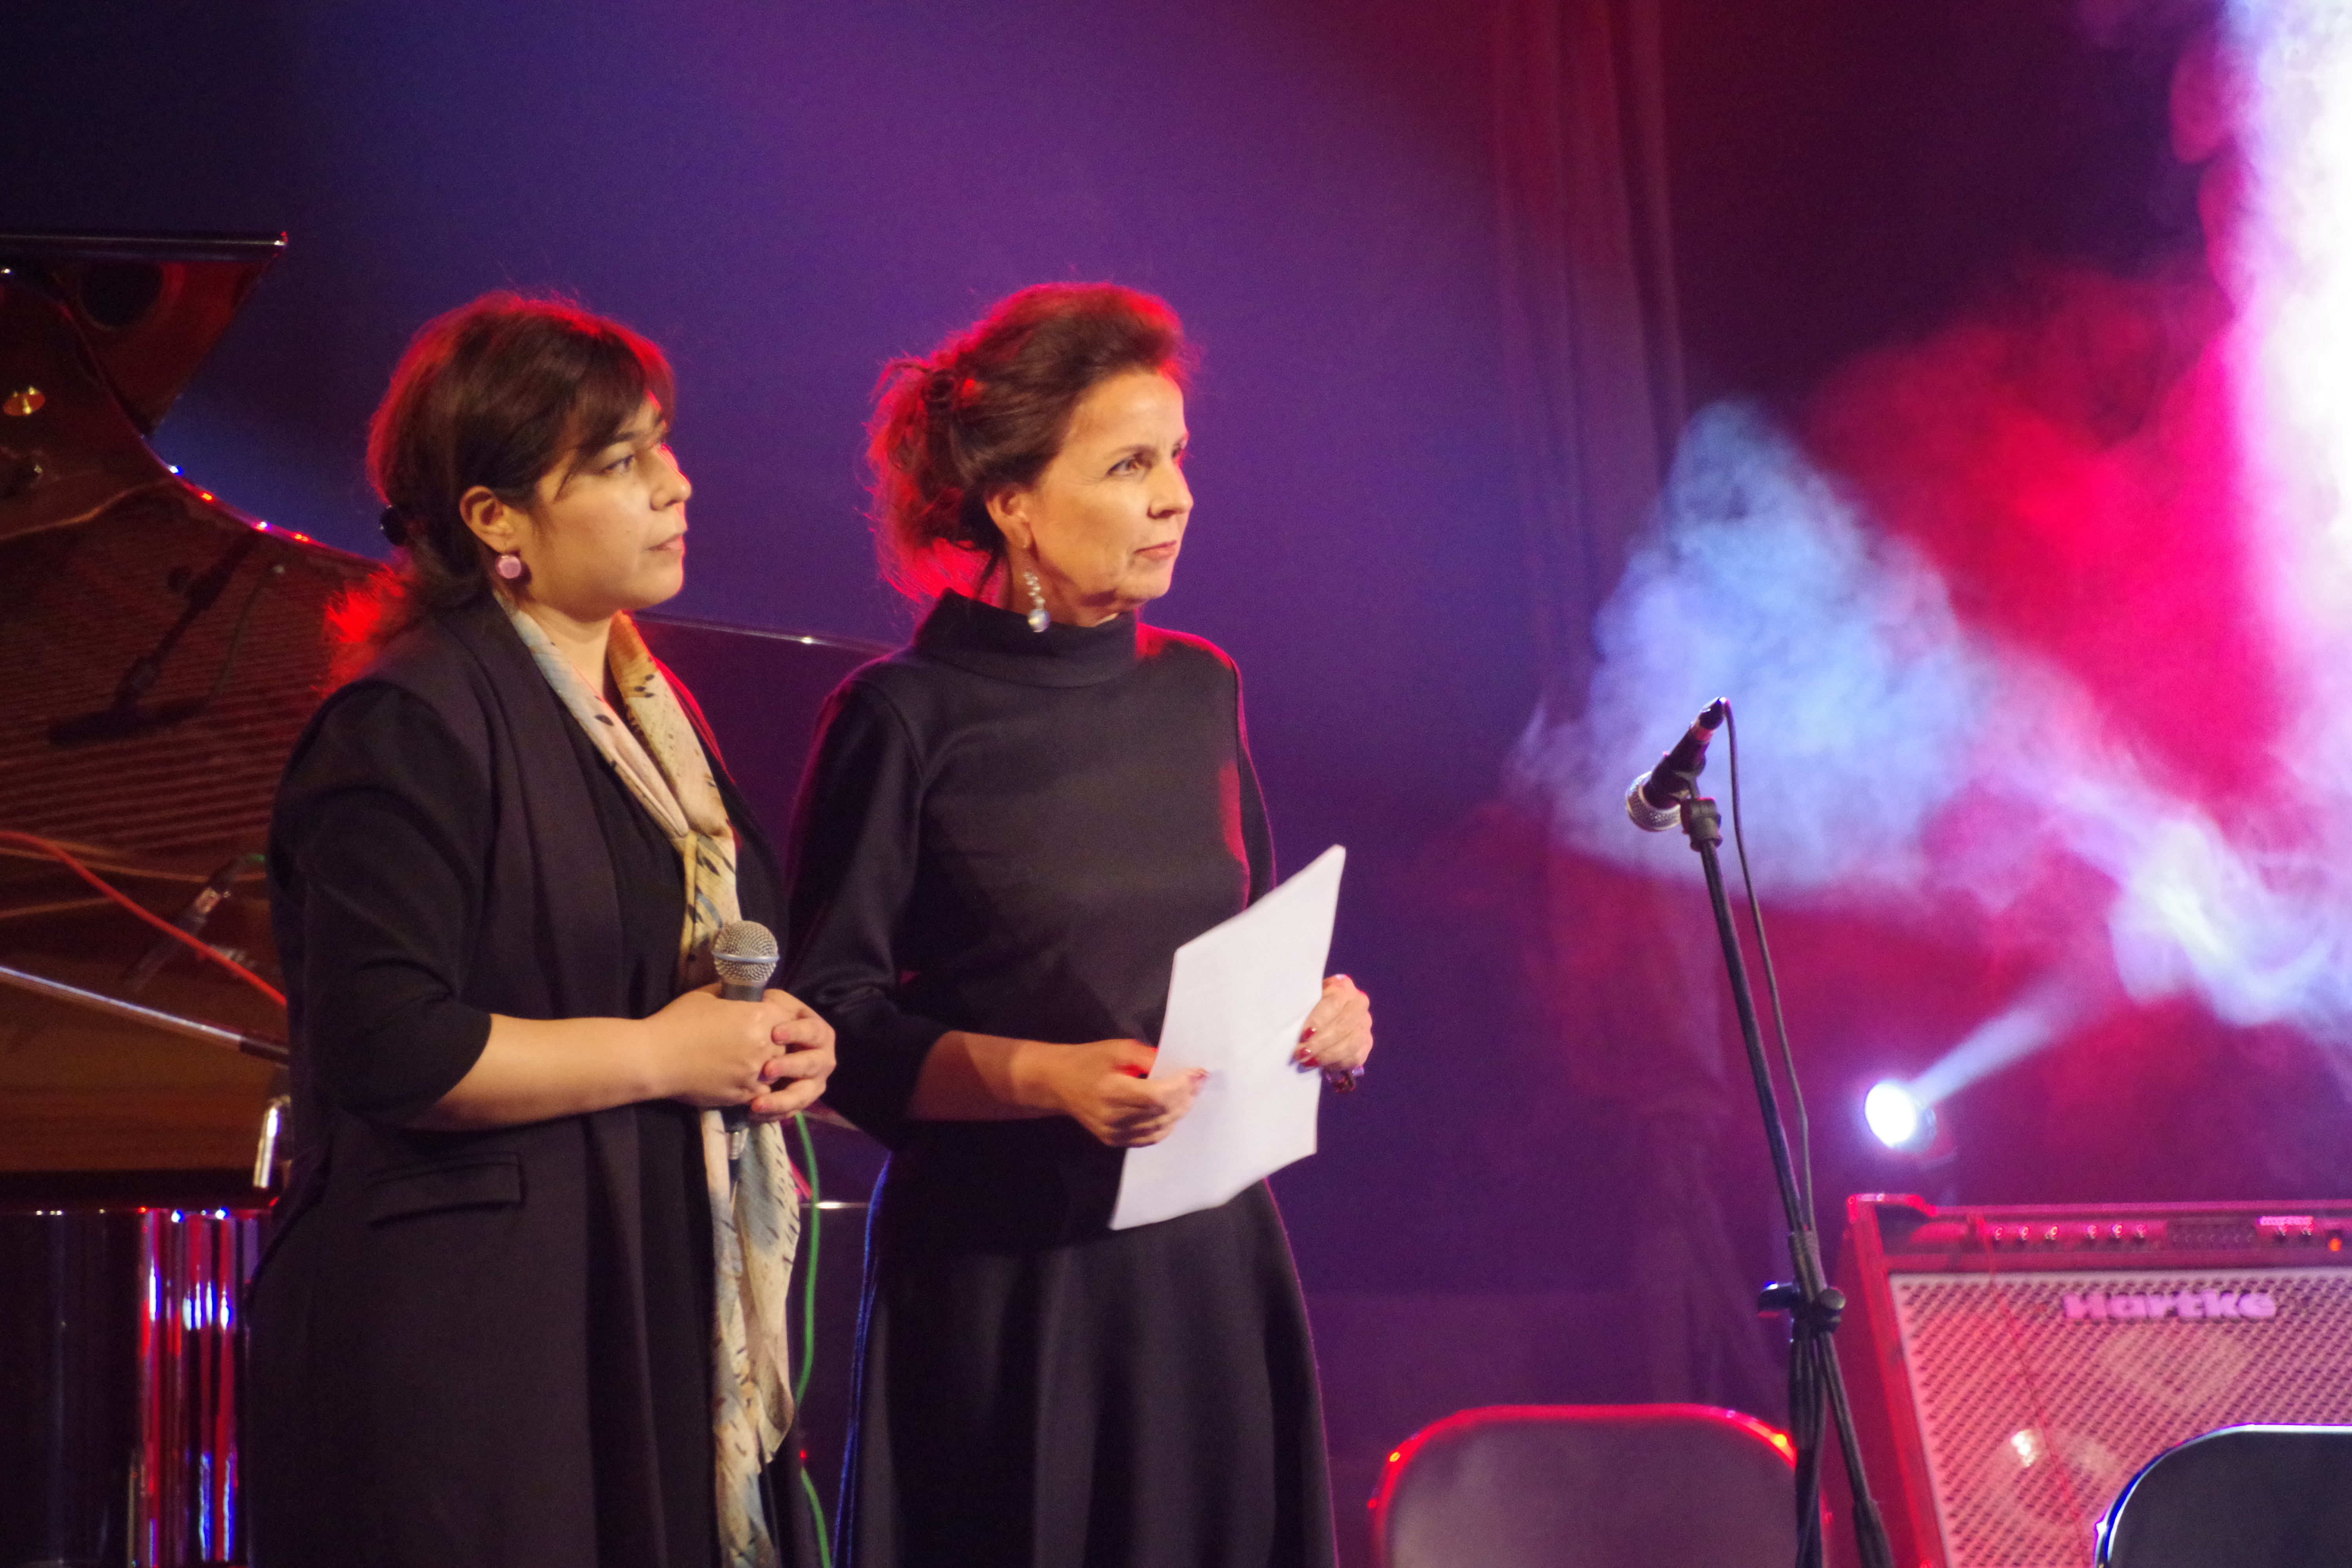 Walburga Roos, Direttore di SCO Tagikistan e Muattara Bashirova, Direttore dell'Arte e della Cultura di SCO Tagikistan che inaugura il Festival